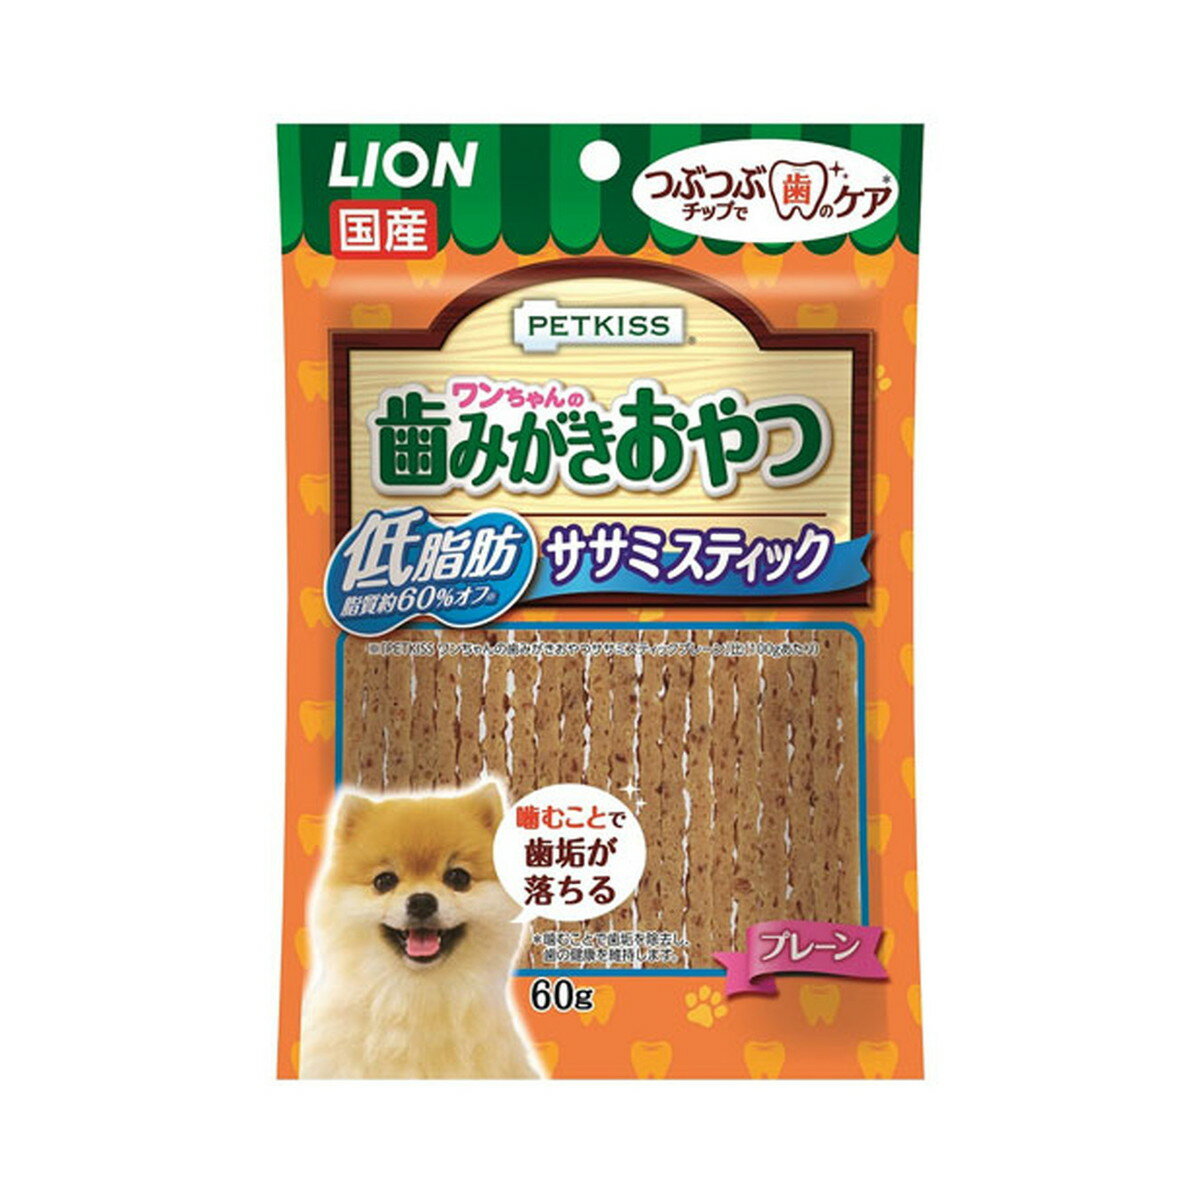 【送料込】 ライオン商事 PETKISS ペットキッス ワンちゃんの 歯みがきおやつ 低脂肪 ササミスティック プレーン 60g 犬用 1個